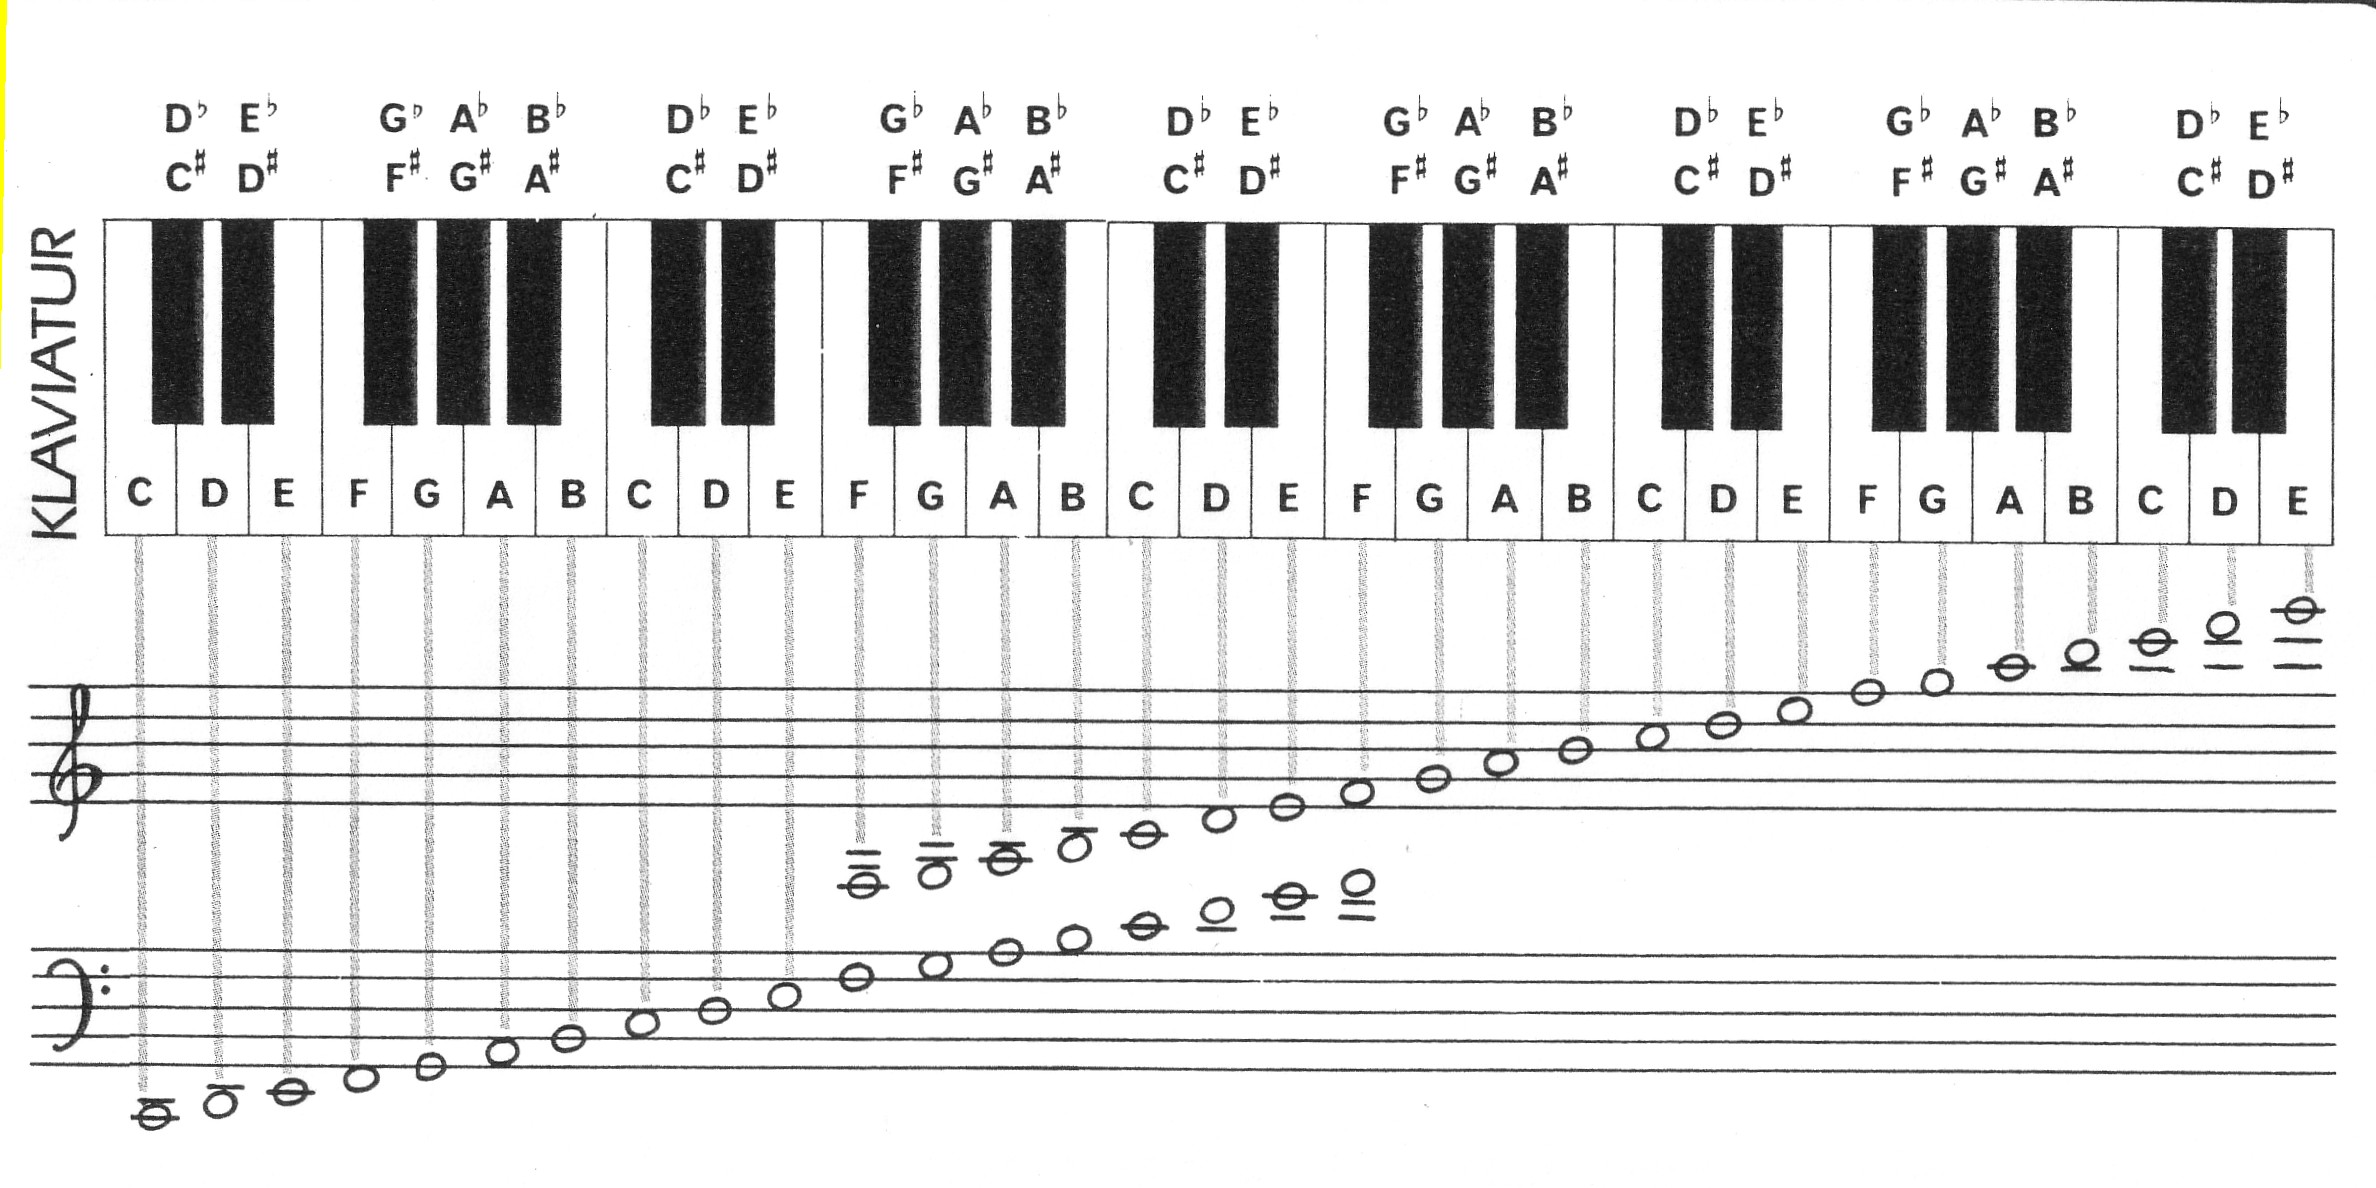 Басовый ключ пианино. Октавы на синтезаторе 61 клавиша. Ноты и октавы на синтезаторе 61 клавиша. Схема расположения нот на синтезаторе 61 клавиша. Расположение нот на пианино.